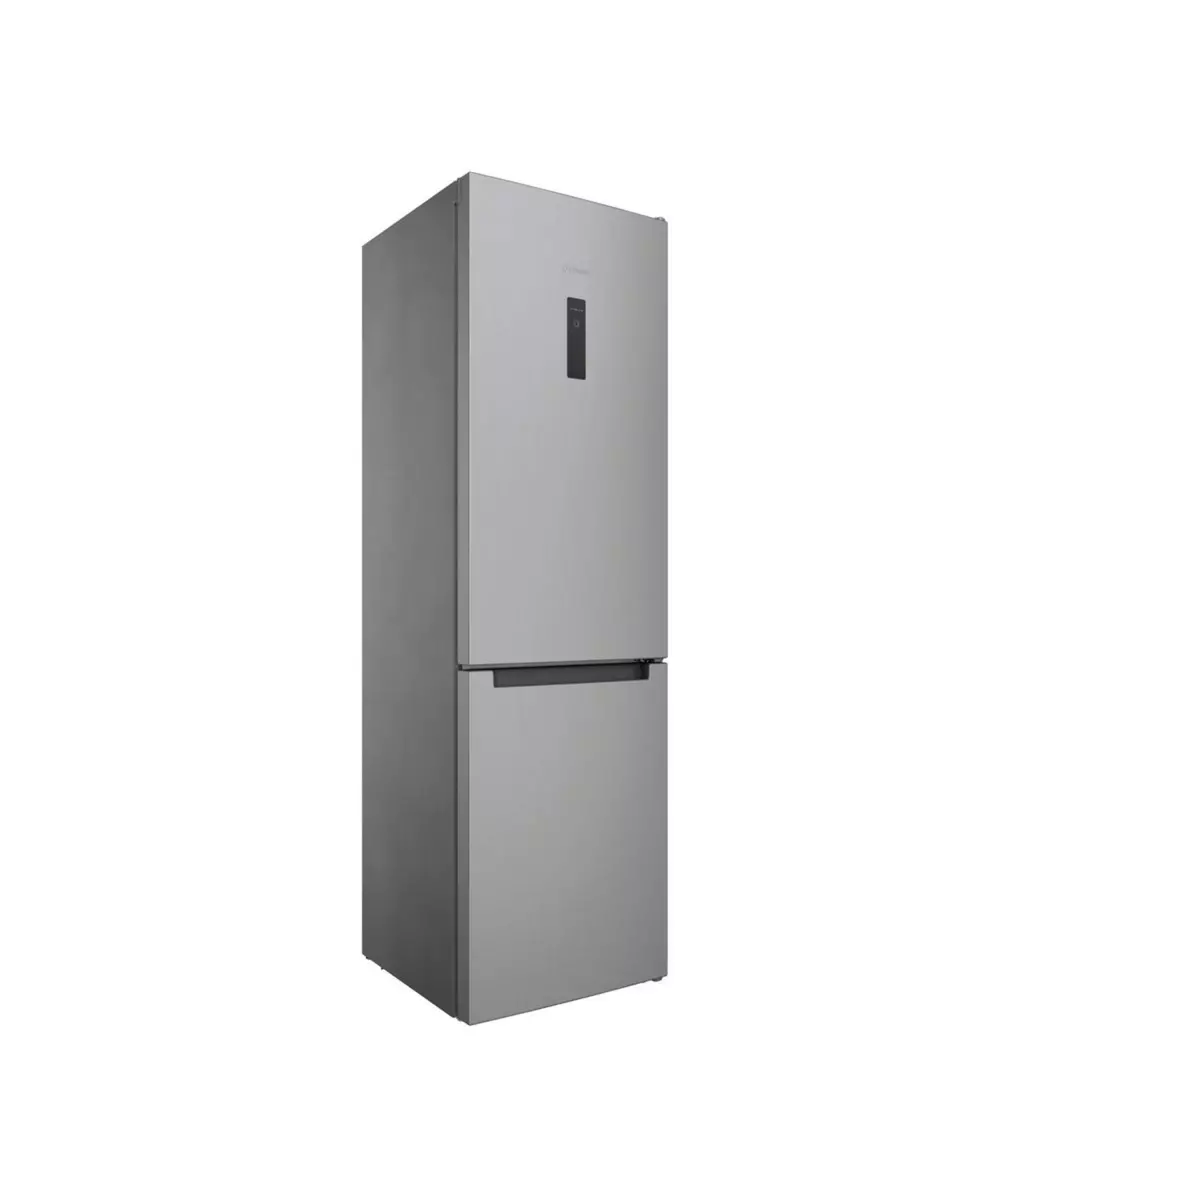 Refrigerateur Congelateur Froid Ventile : Achetez pas cher